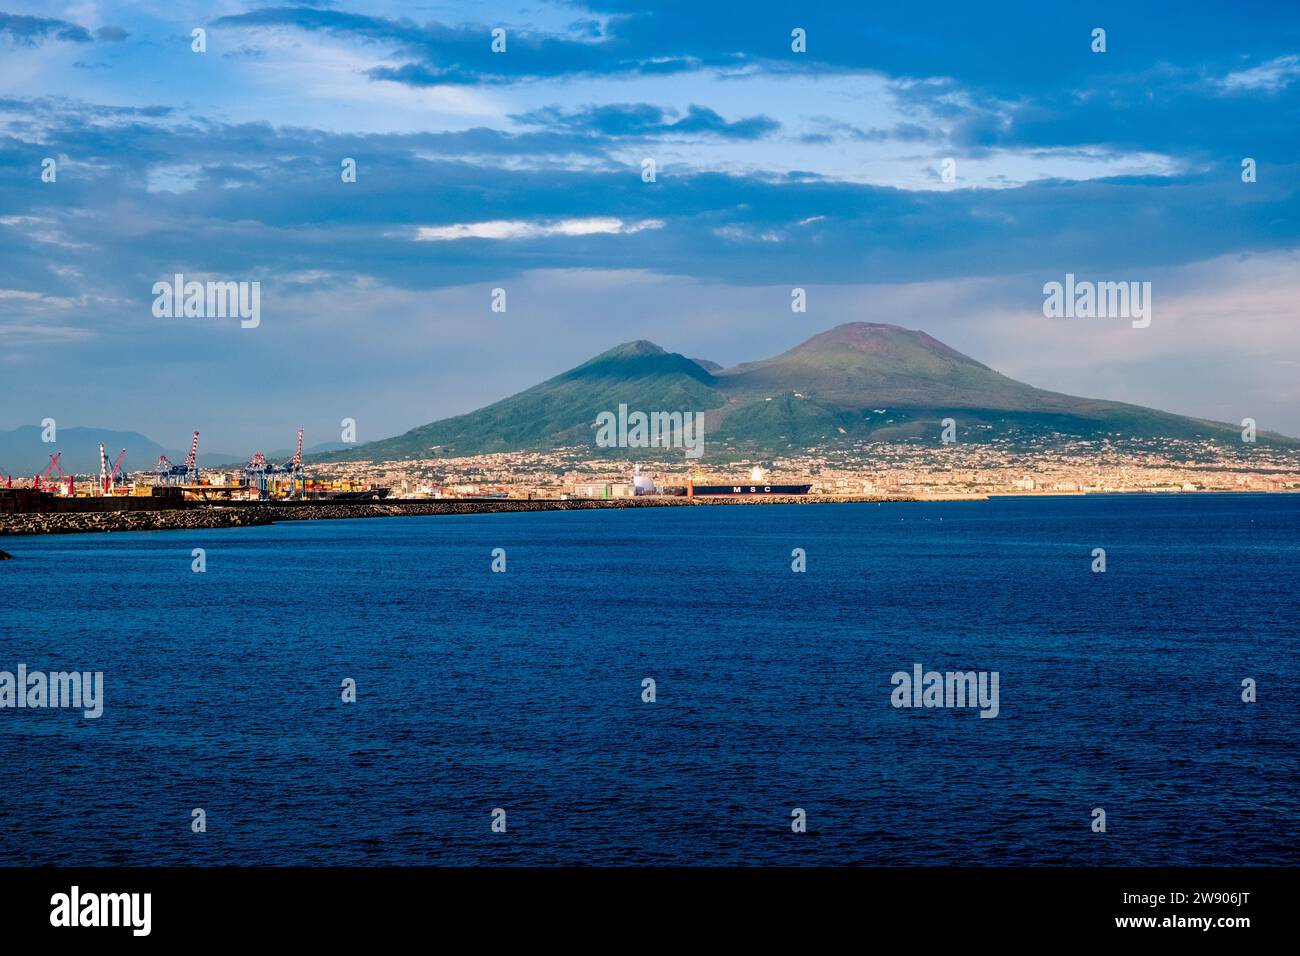 Der Vulkan Vesuv, der über dem Golf von Neapel gesehen wird. Stockfoto